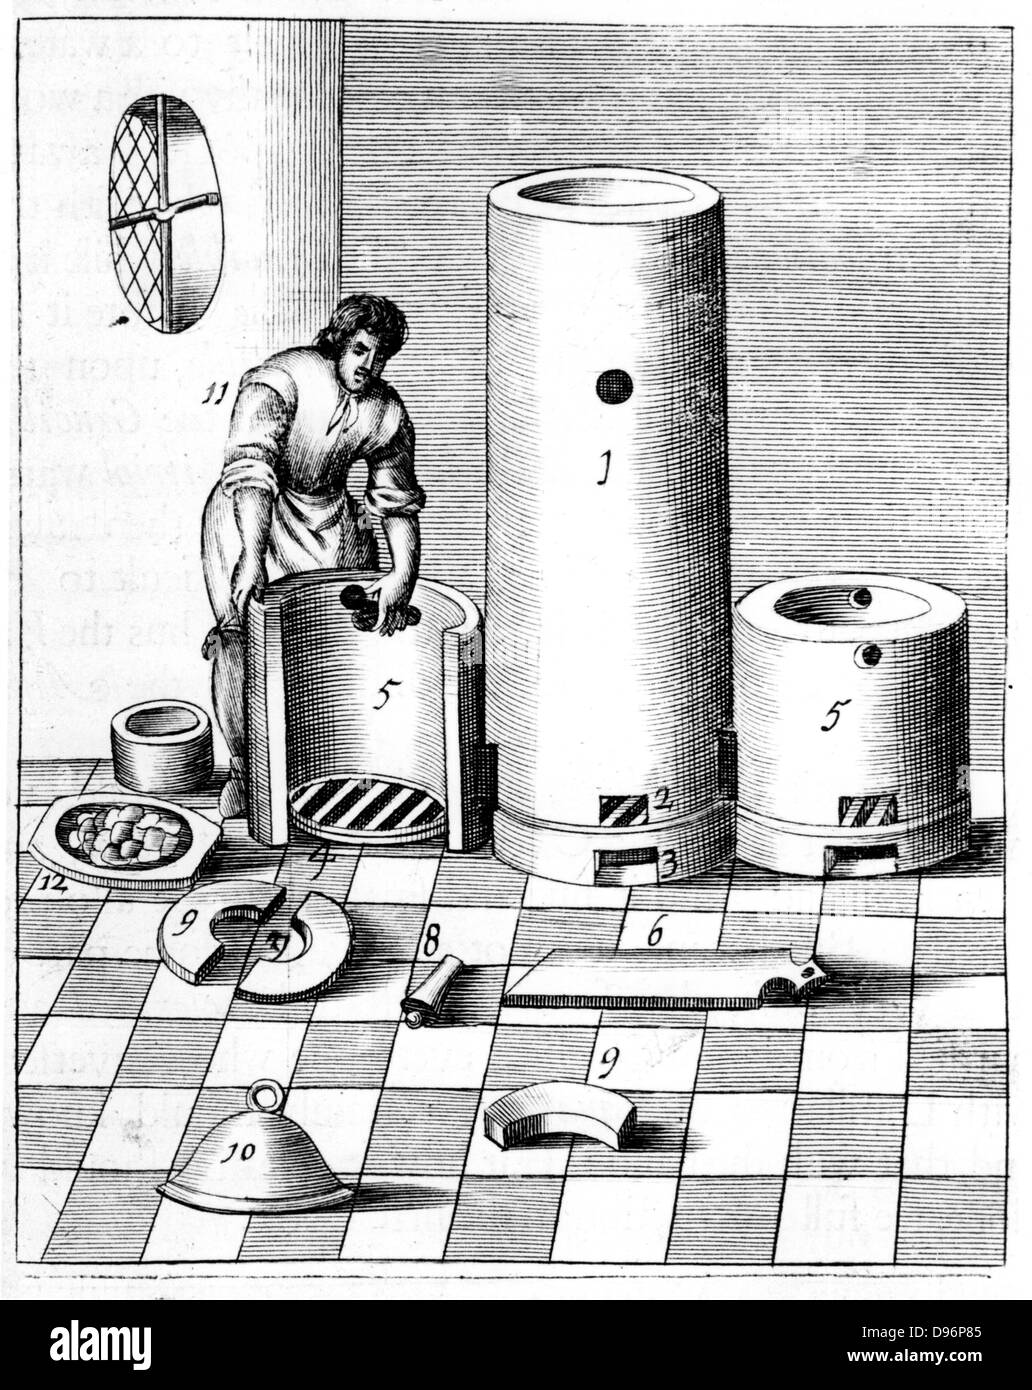 Athanor oder niedrige Harry", ein selbst stillen Ofen die Aufrechterhaltung einer konstanten Temperatur. Diese Platte zeigt die Athanor und seitlichen Kammern (5,5) für Reagenzien in separate Teile. Eine der Verwendungen des Ofens wurde die Produktion von Salpetersäure (auch bekannt als Aqua Fortis oder Abstechen Säure), die in der Raffination und Bestimmung von Metallen verwendet wurde. Ab 1683 Englische Ausgabe von 'Beschreibung', mineralischen allerfurnemisten Ertzt Lazarus Ercker (Prag, 1574). Kupferstich. Stockfoto